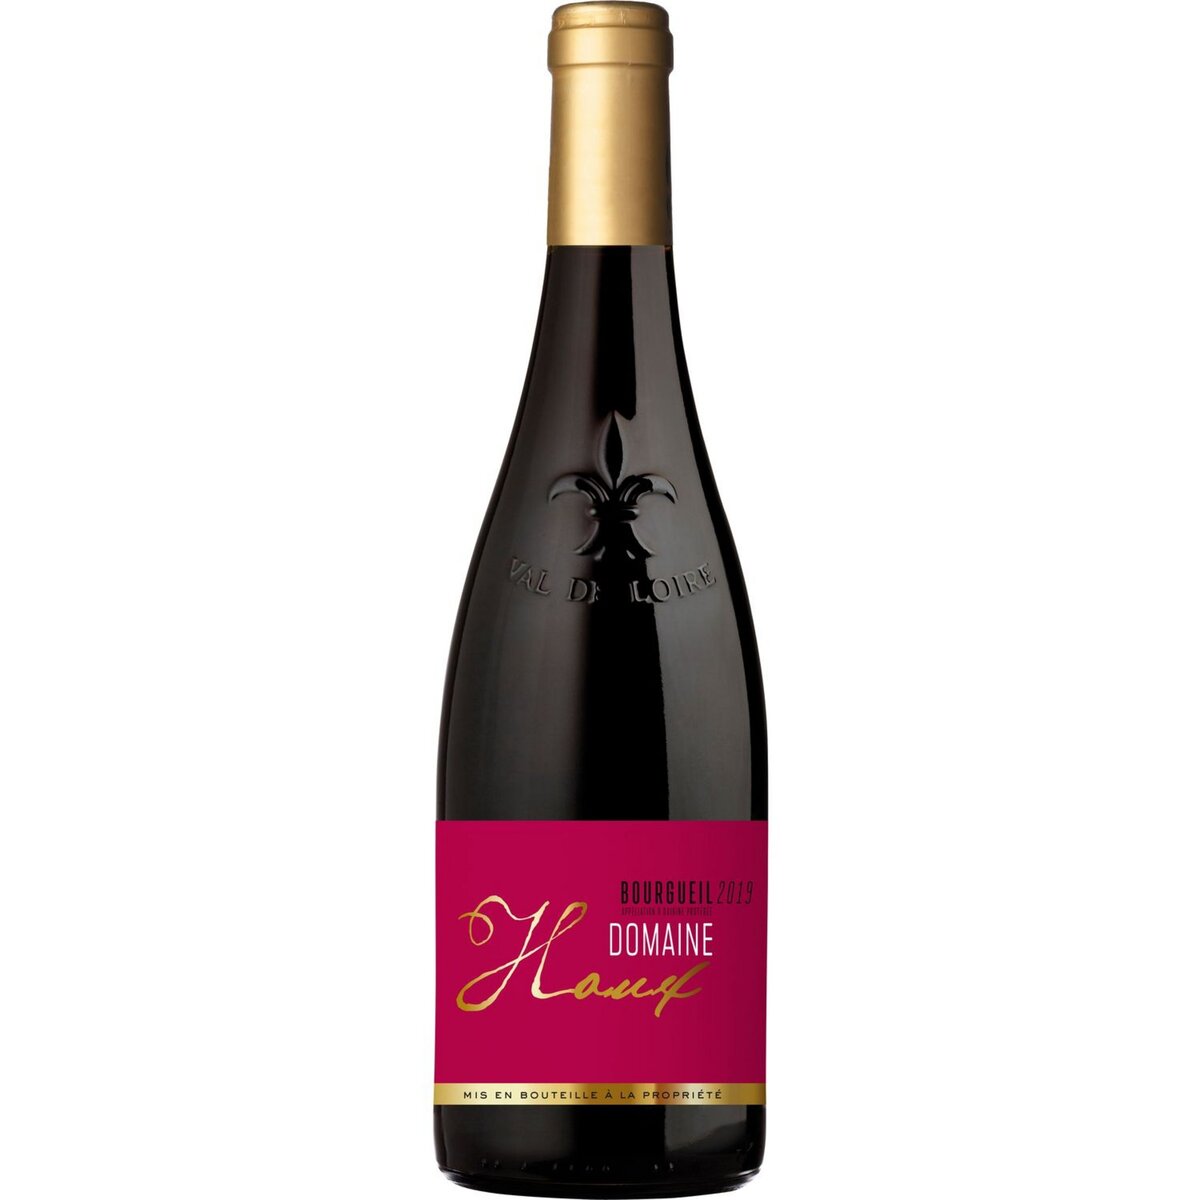 Vin rouge AOP Bourgueil Domaine Houx 2019 75cl